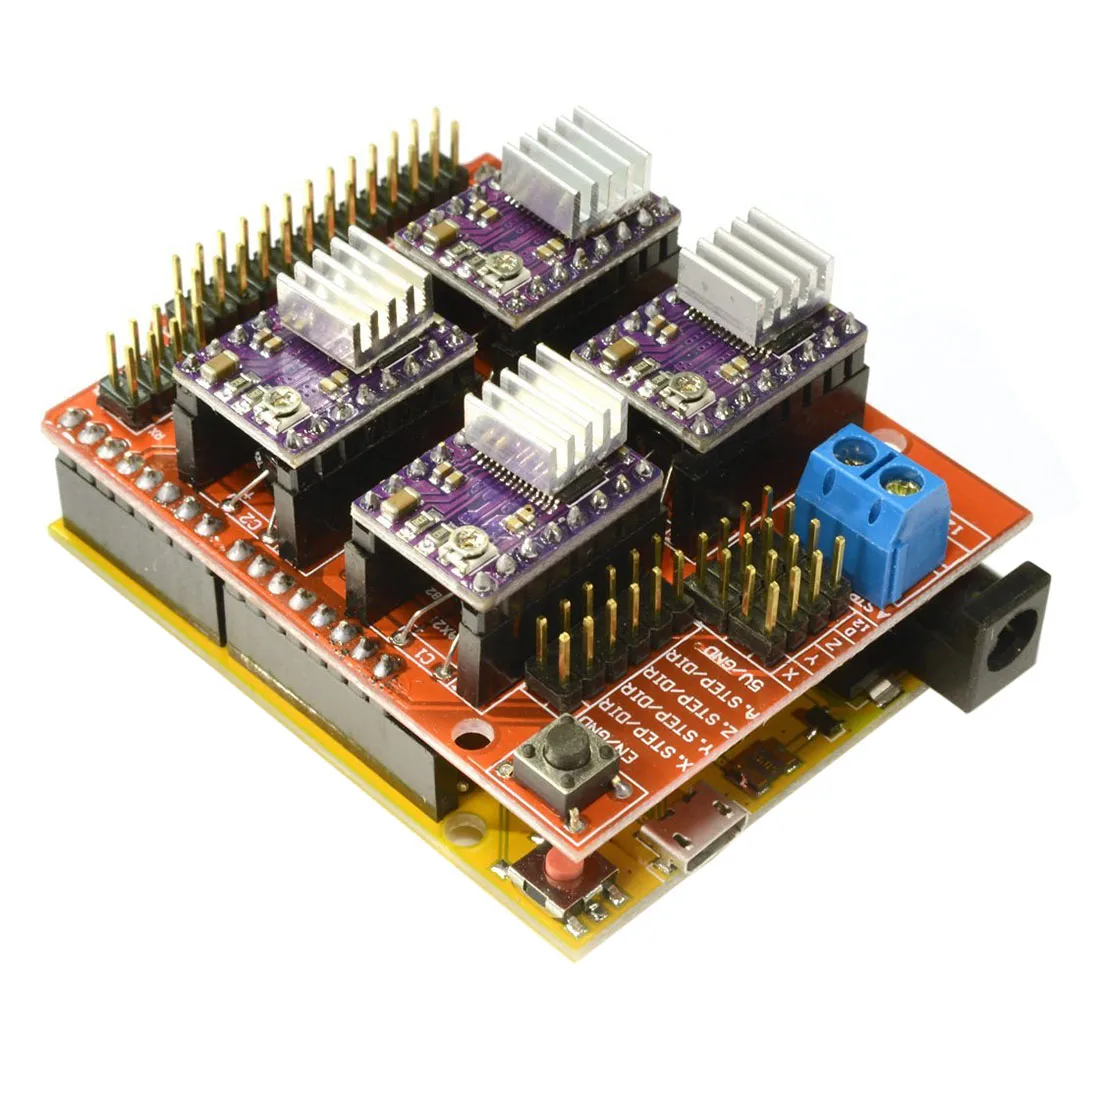 CNC V3 щит+ UNO R3 для Arduino совместимая плата+ 4x TI DRV8825 StepStick Шаговые драйверы красный+ фиолетовый